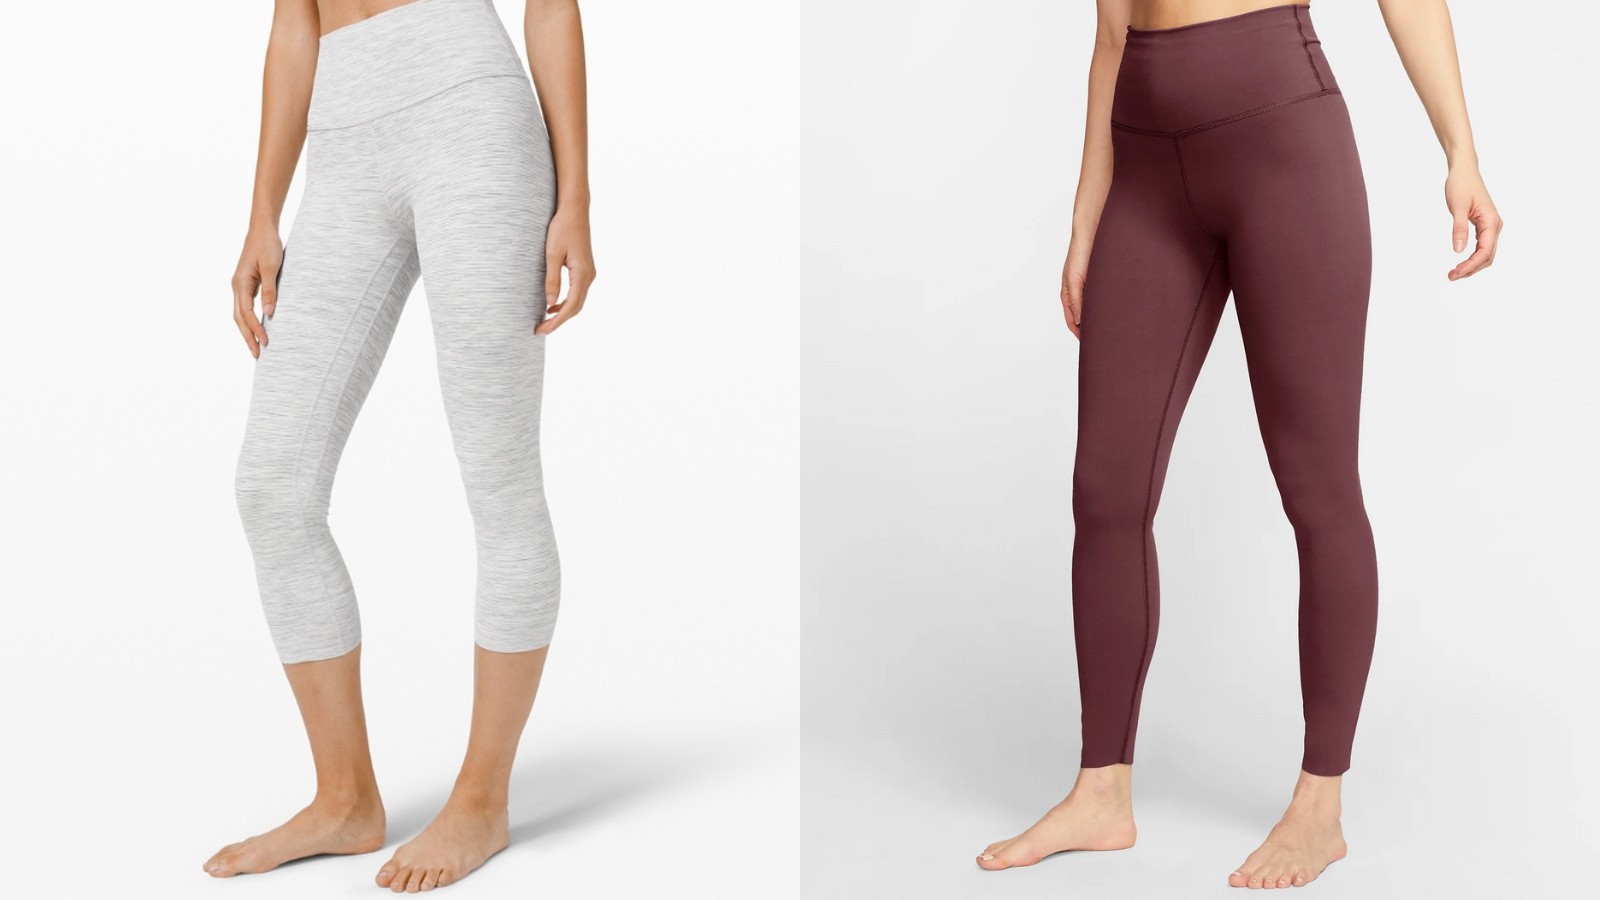 Lululemon leggings vs Nike leggings: We 